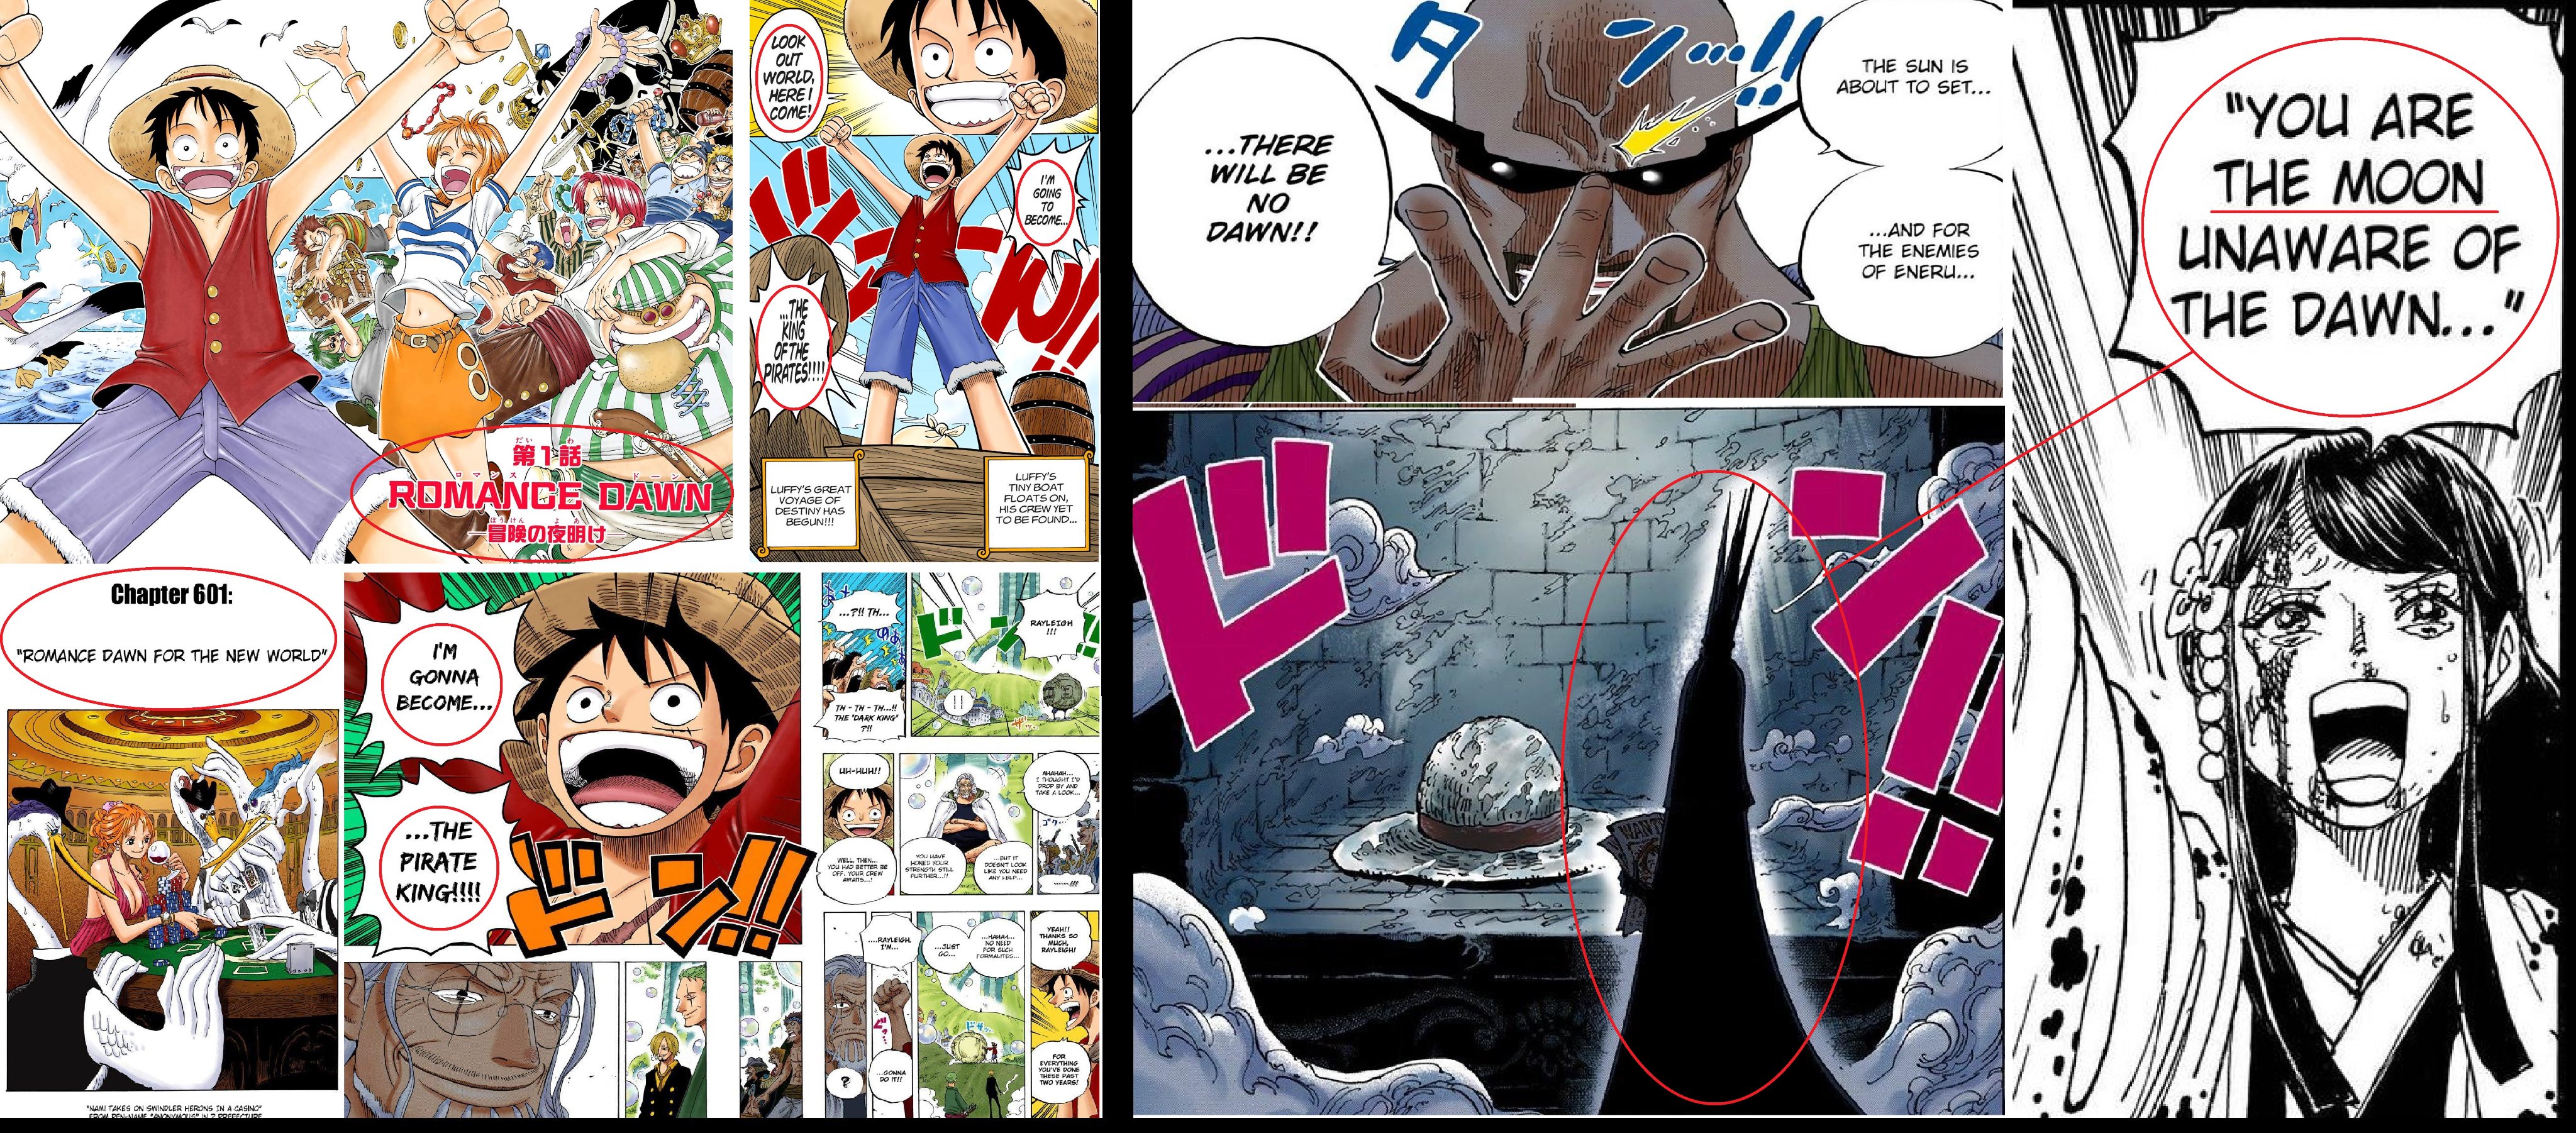 Das Geheimnis des fehlenden Linken Auges und warum es der Schlüssel zum One Piece ist (Analyse+Theorie) [ENGLISCH] FTzE_AjXEAA9_-o?format=jpg&name=4096x4096